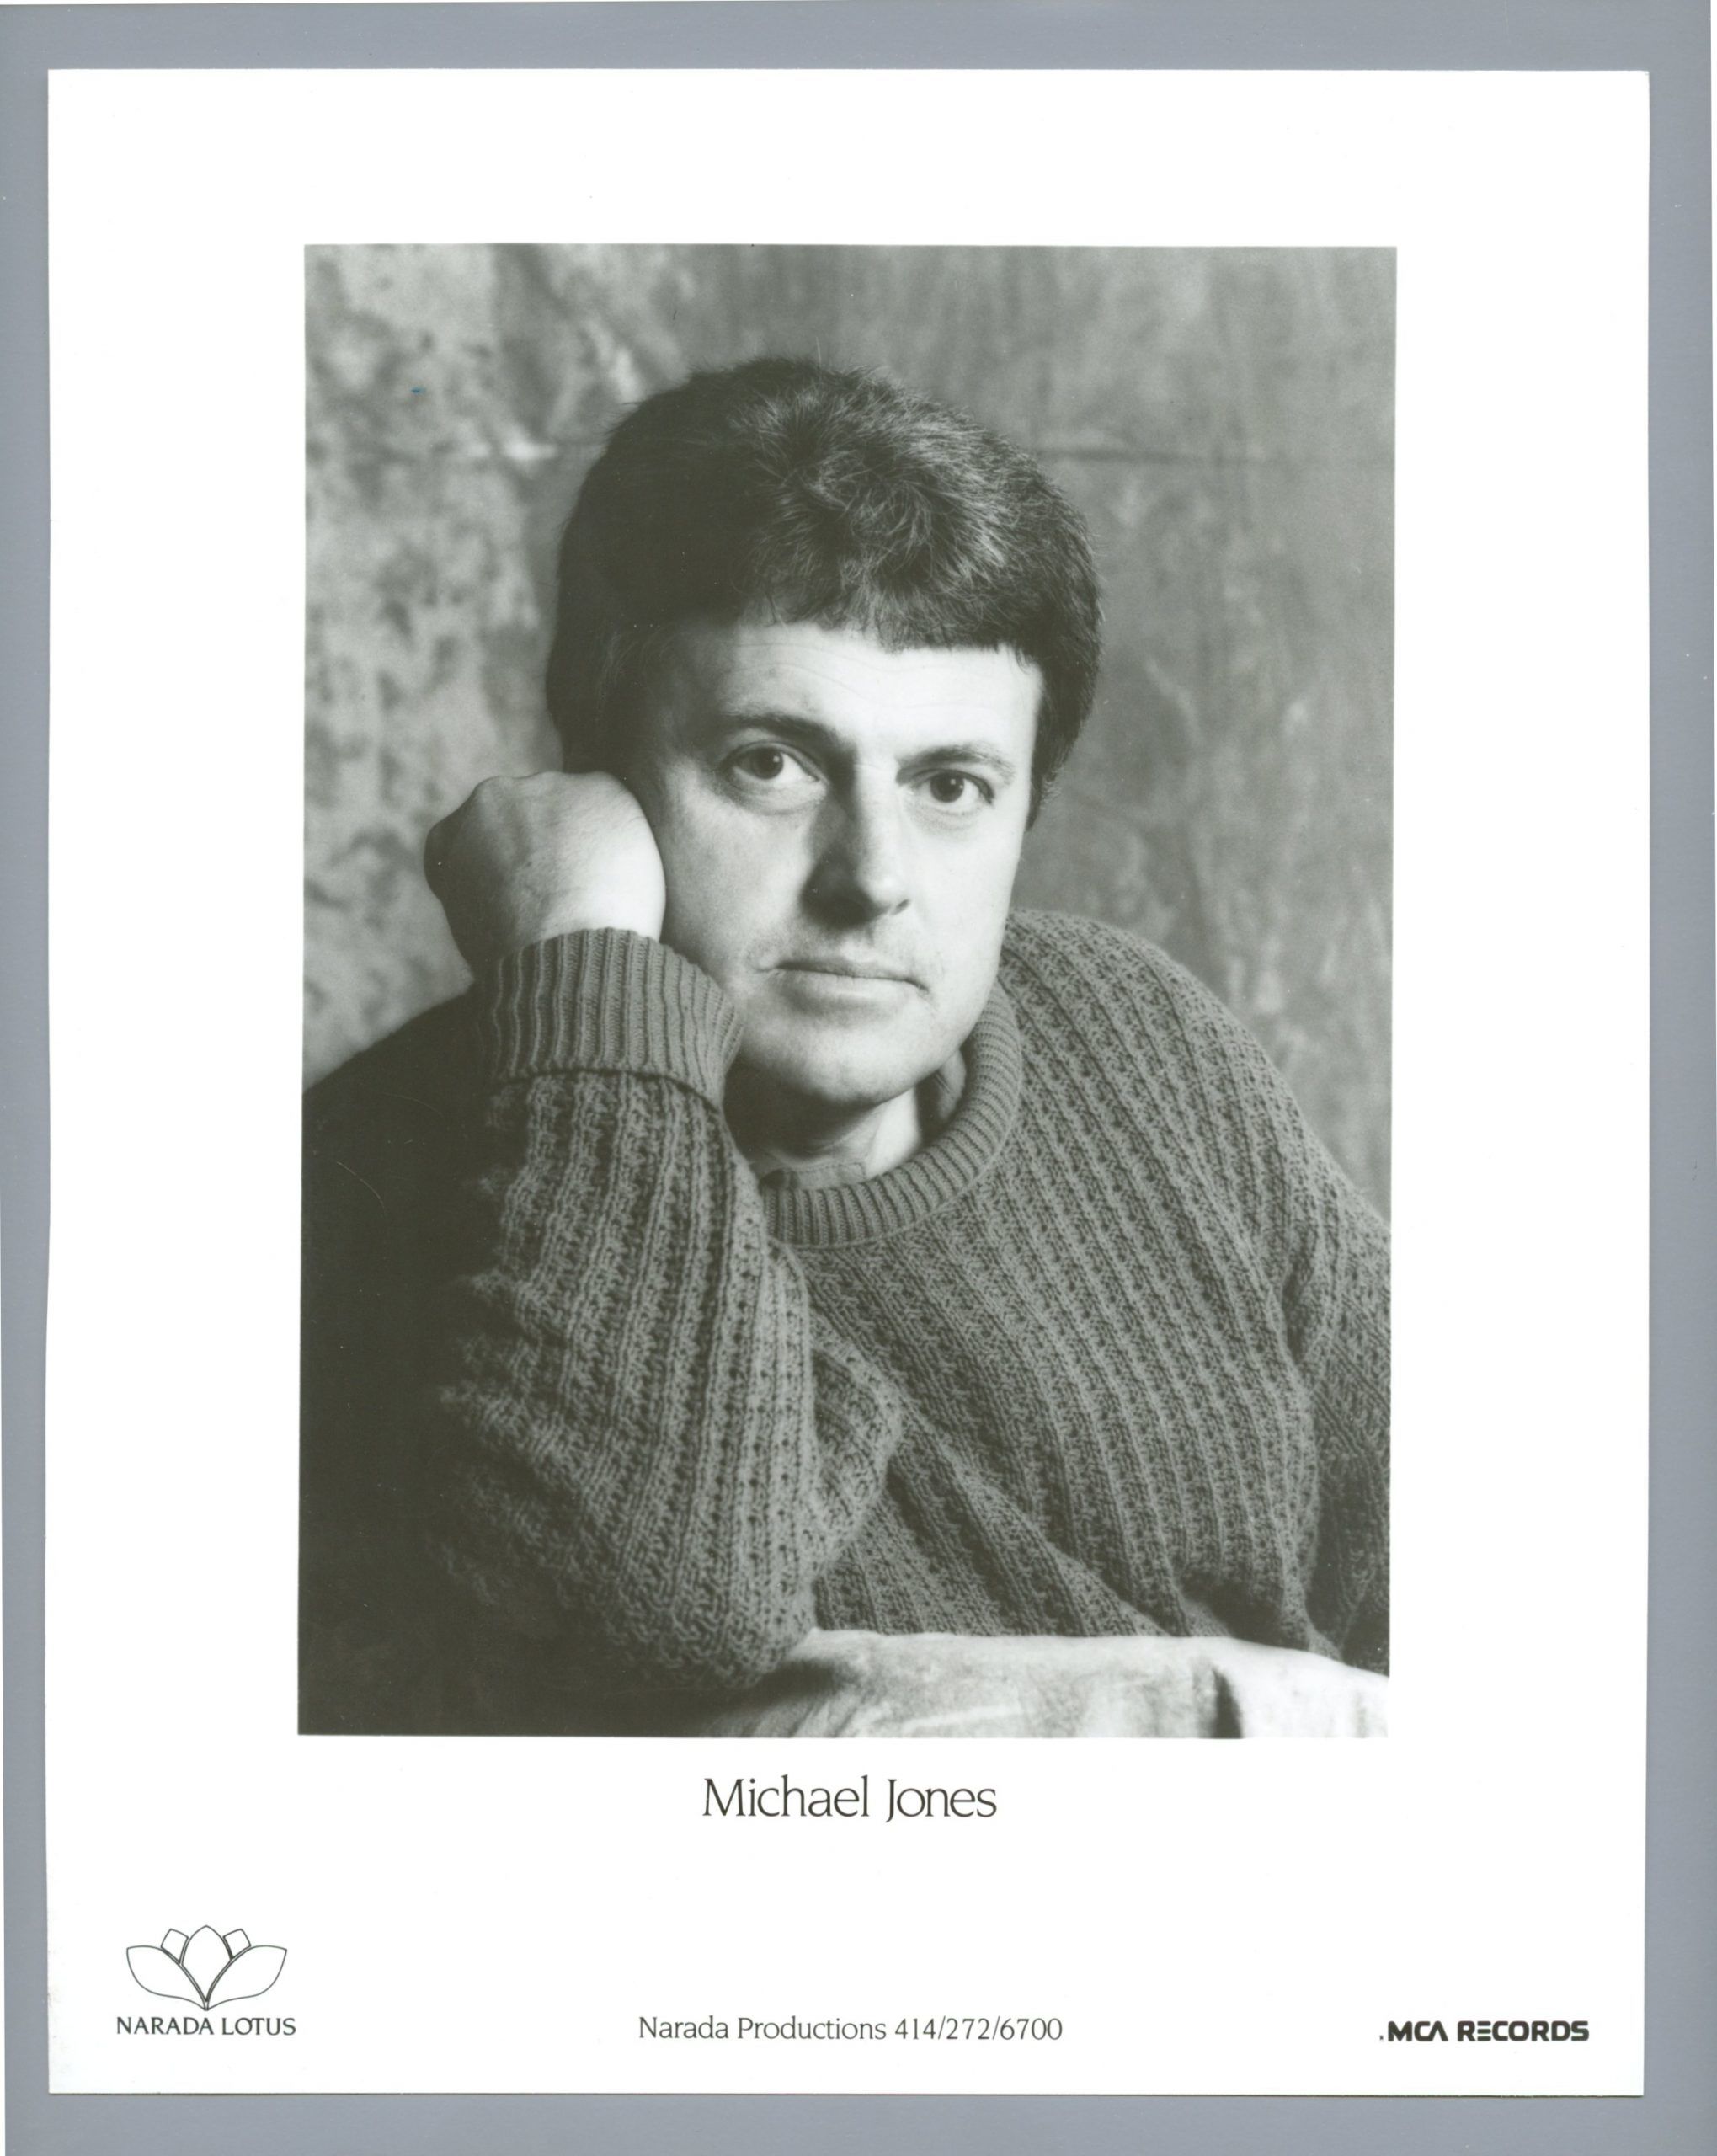 Michael Jones Photo 1980s MCA Records